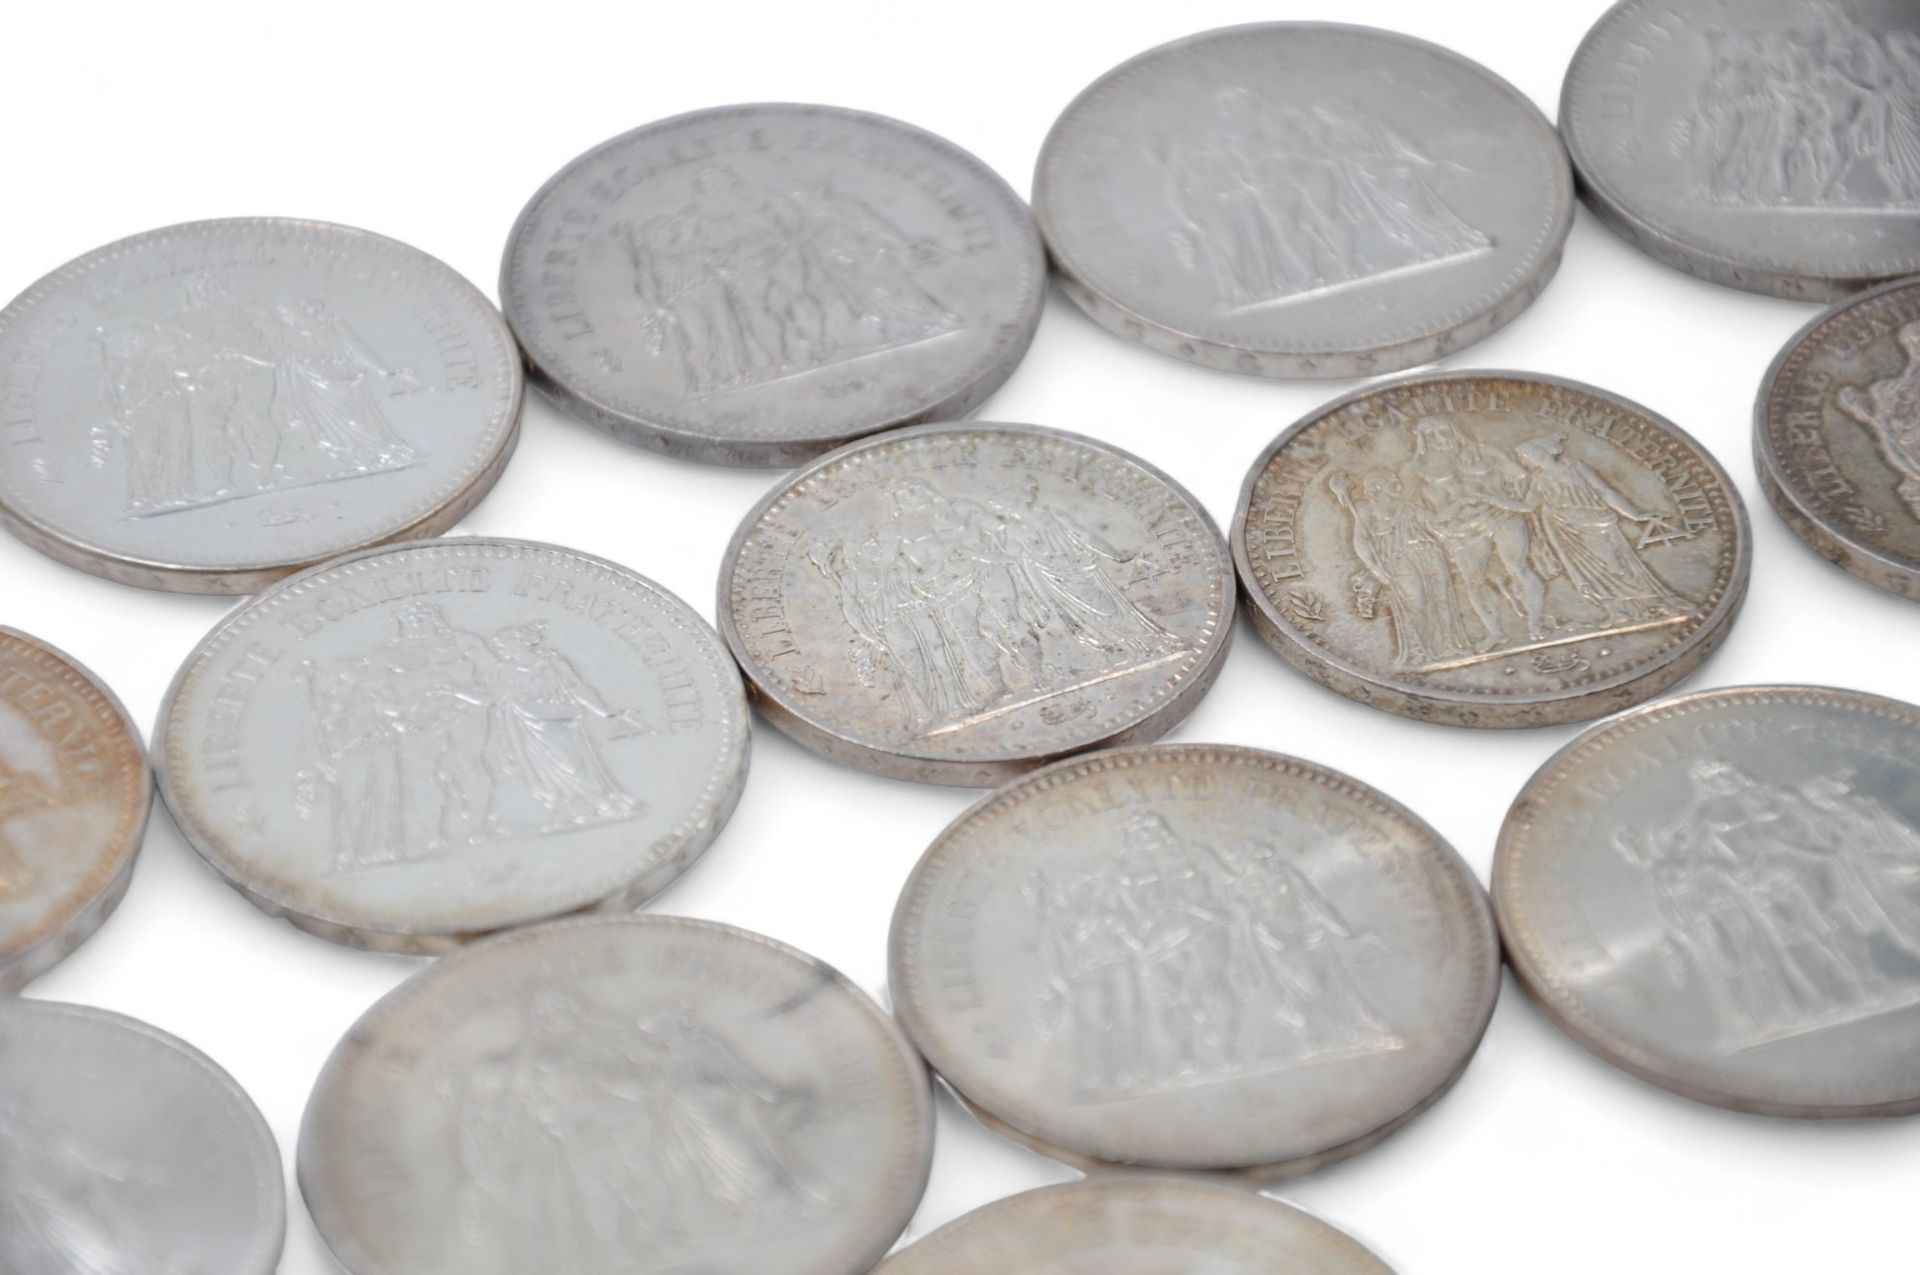 Null Lot de 16 pièces en argent
- 3 pièces 10 francs
- 13 pièces de 50 francs